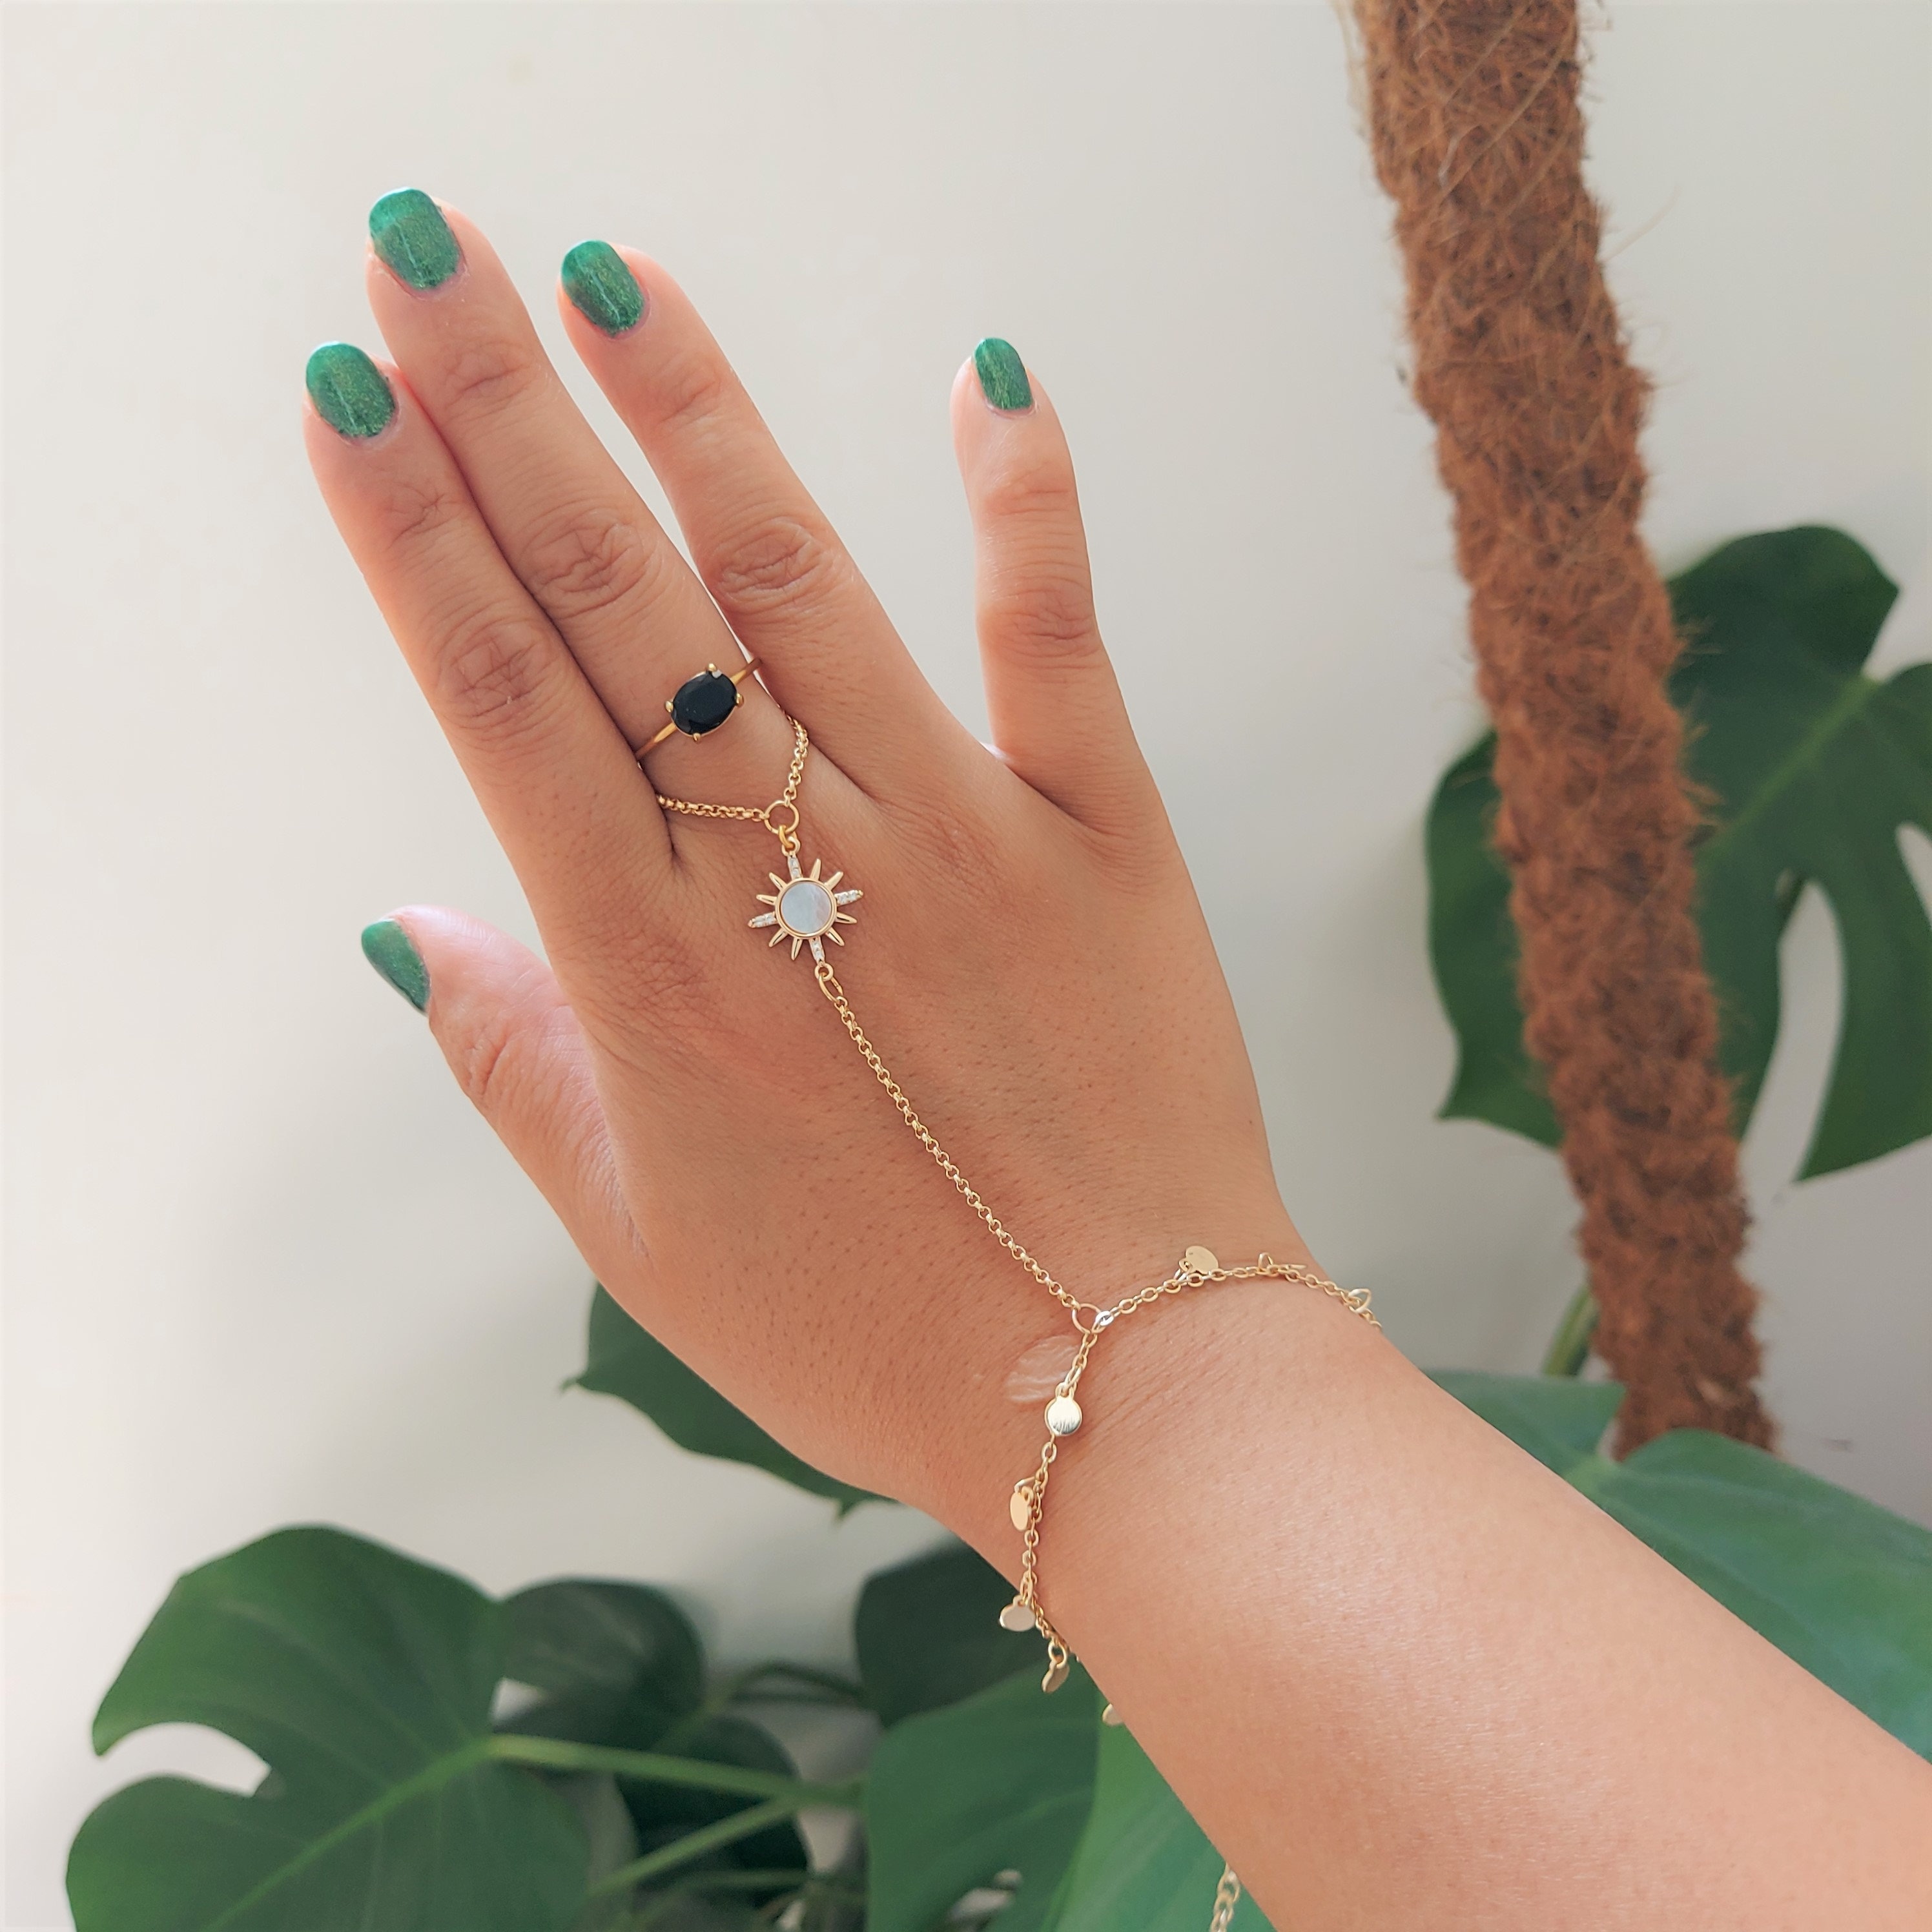 Buy Femnmas Elegant Golden Ethic Ring Chain Bracelet For Girls at Amazon.in